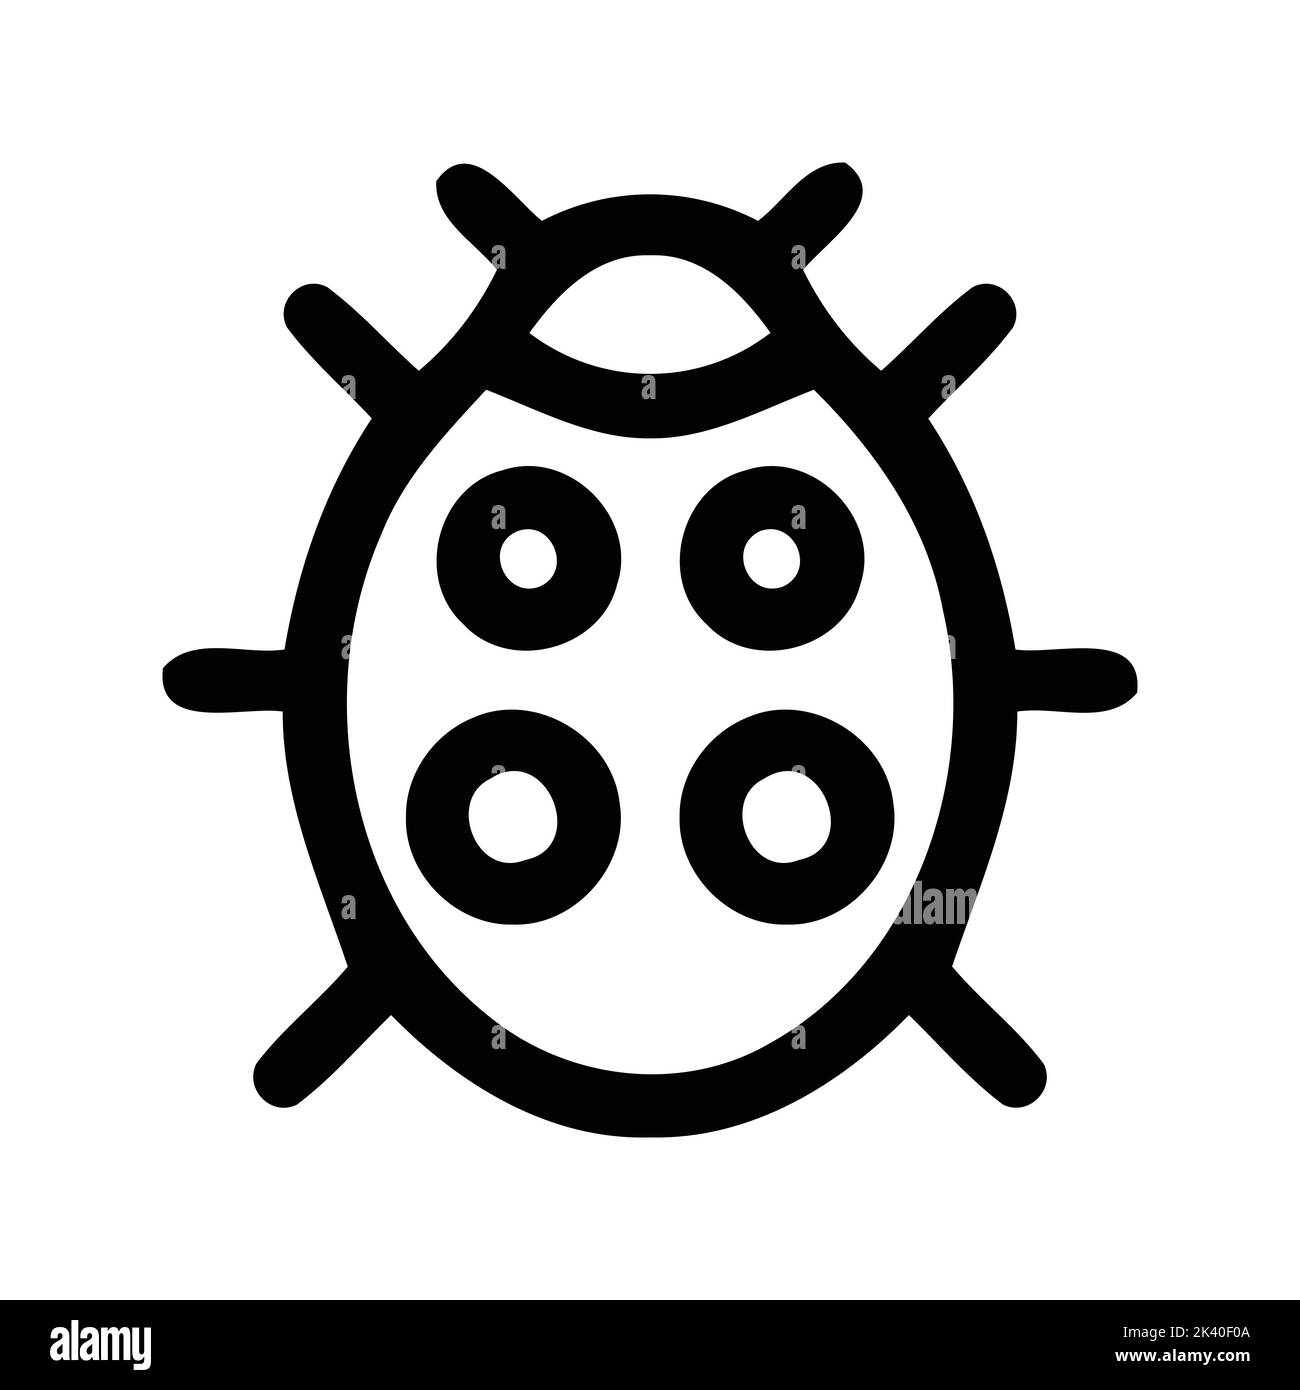 Illustrazione di insetti ladybug vettoriali silhouette Illustrazione Vettoriale